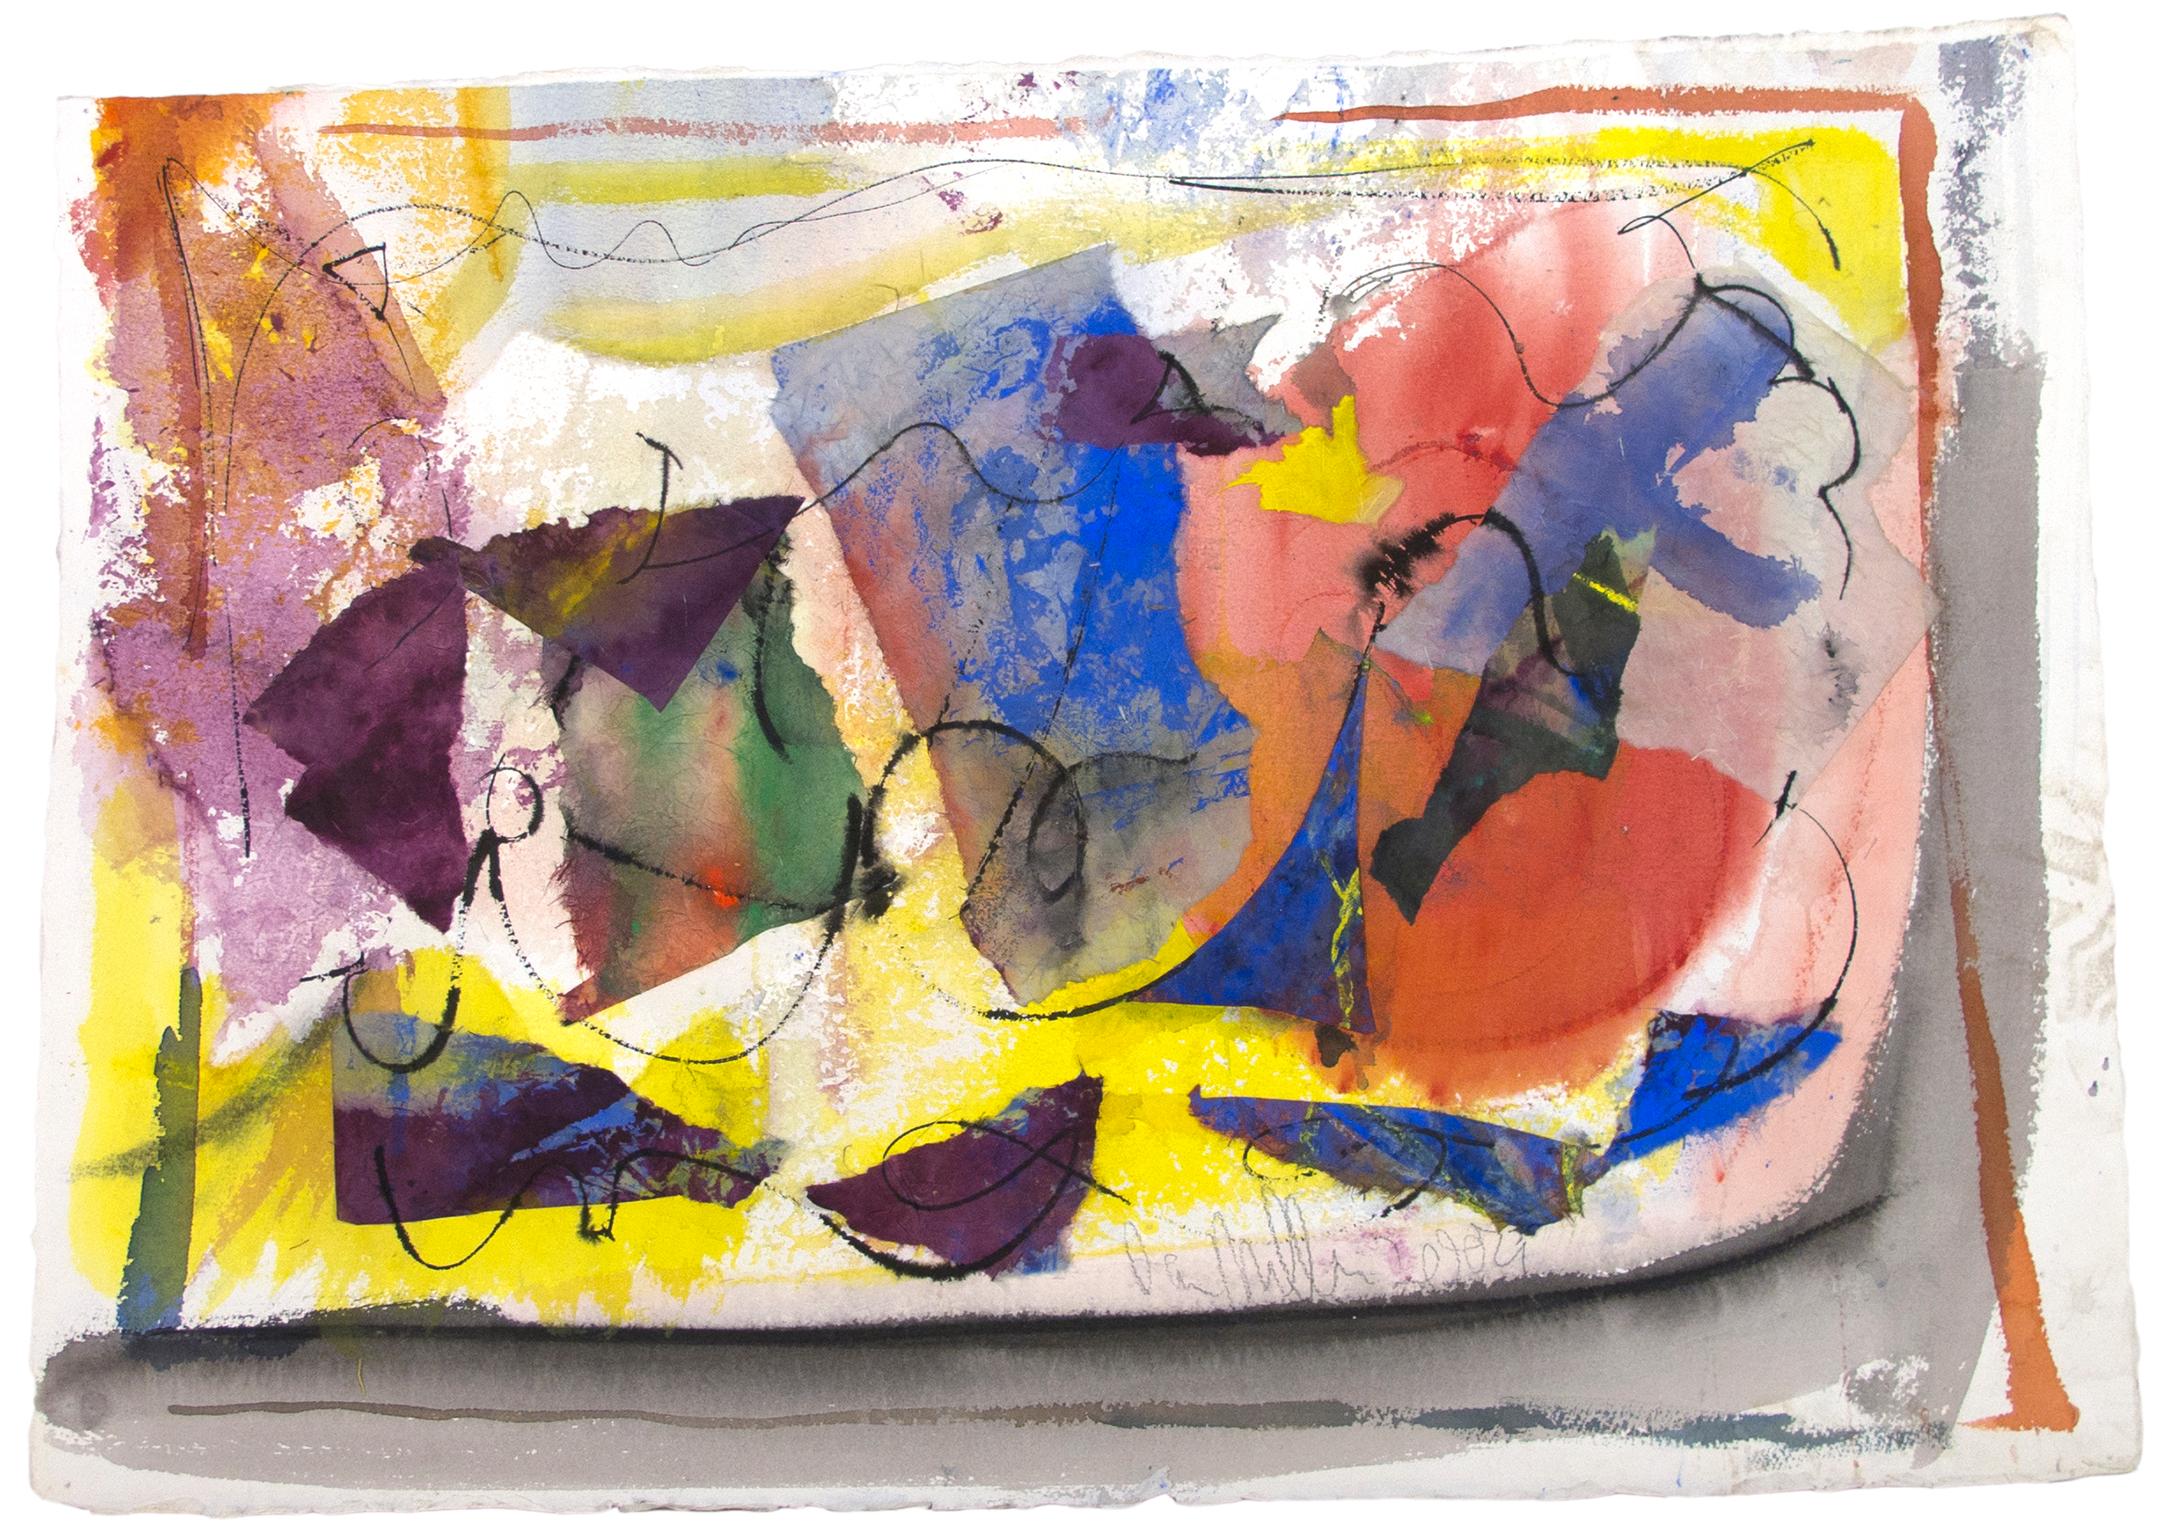 "Dreaming of the Next One" ist ein Original-Gemälde in Mischtechnik auf Papier von Dan Muller. Der Künstler hat das Werk unten rechts signiert. Es zeigt abstrakte Formen in den Grundfarben und Lila. 

20 1/2" x 29 1/2" Kunst
Individuelle Einrahmung